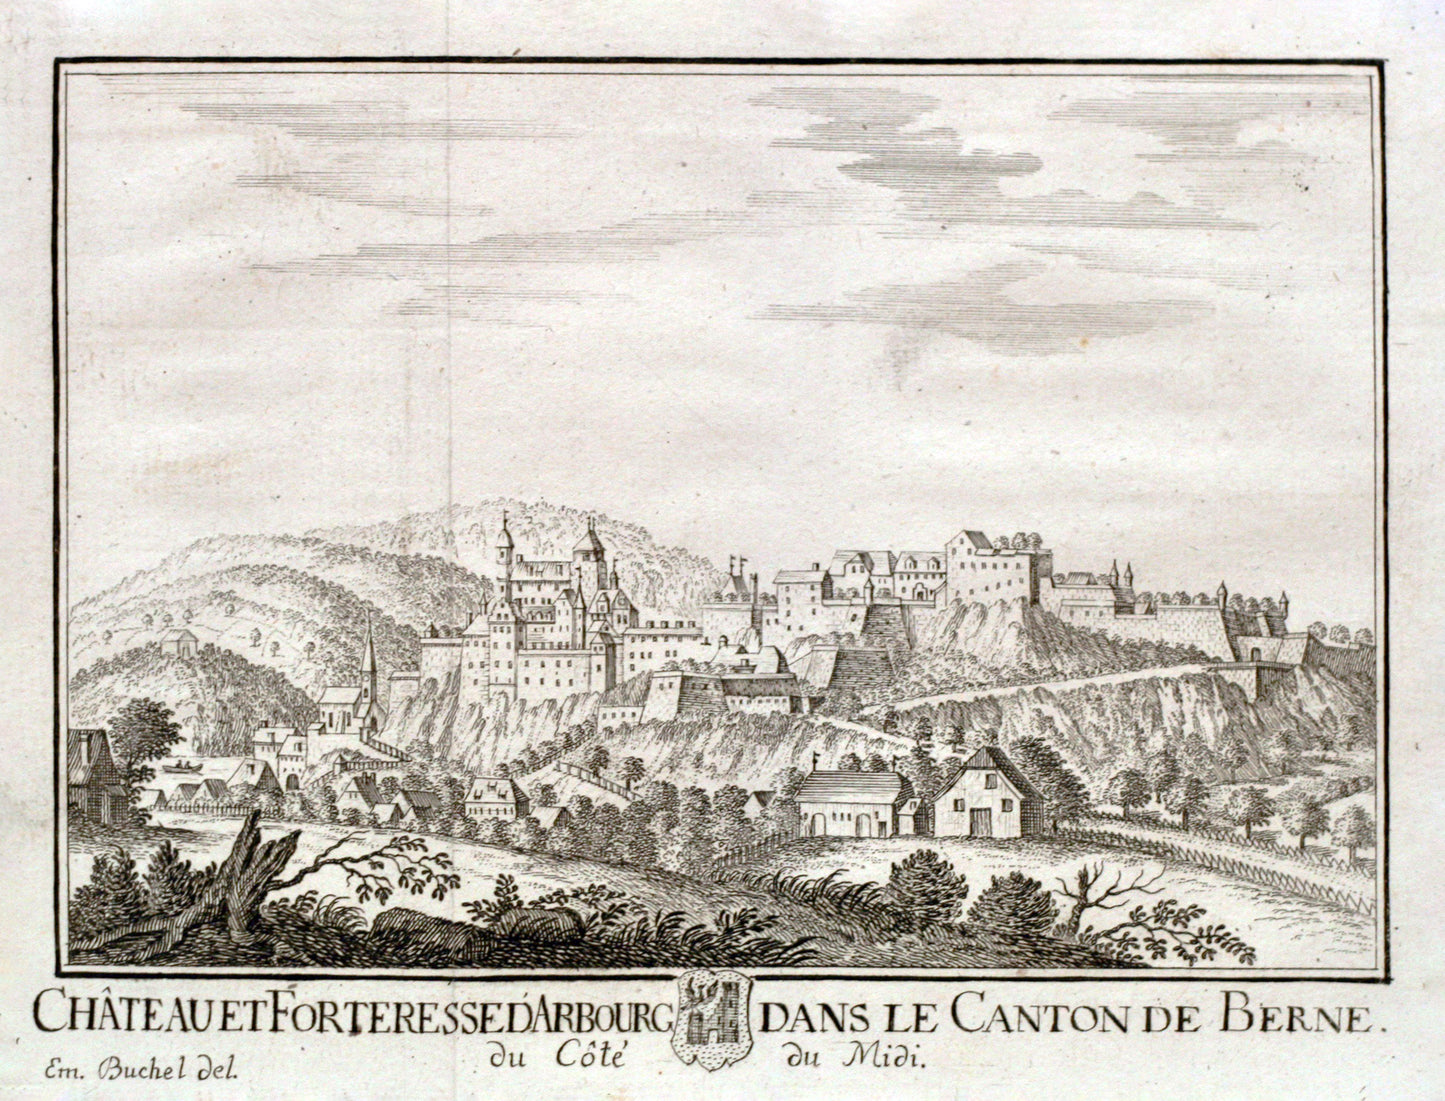 Chateau et Forteresse d'Arbourg (Arburg)